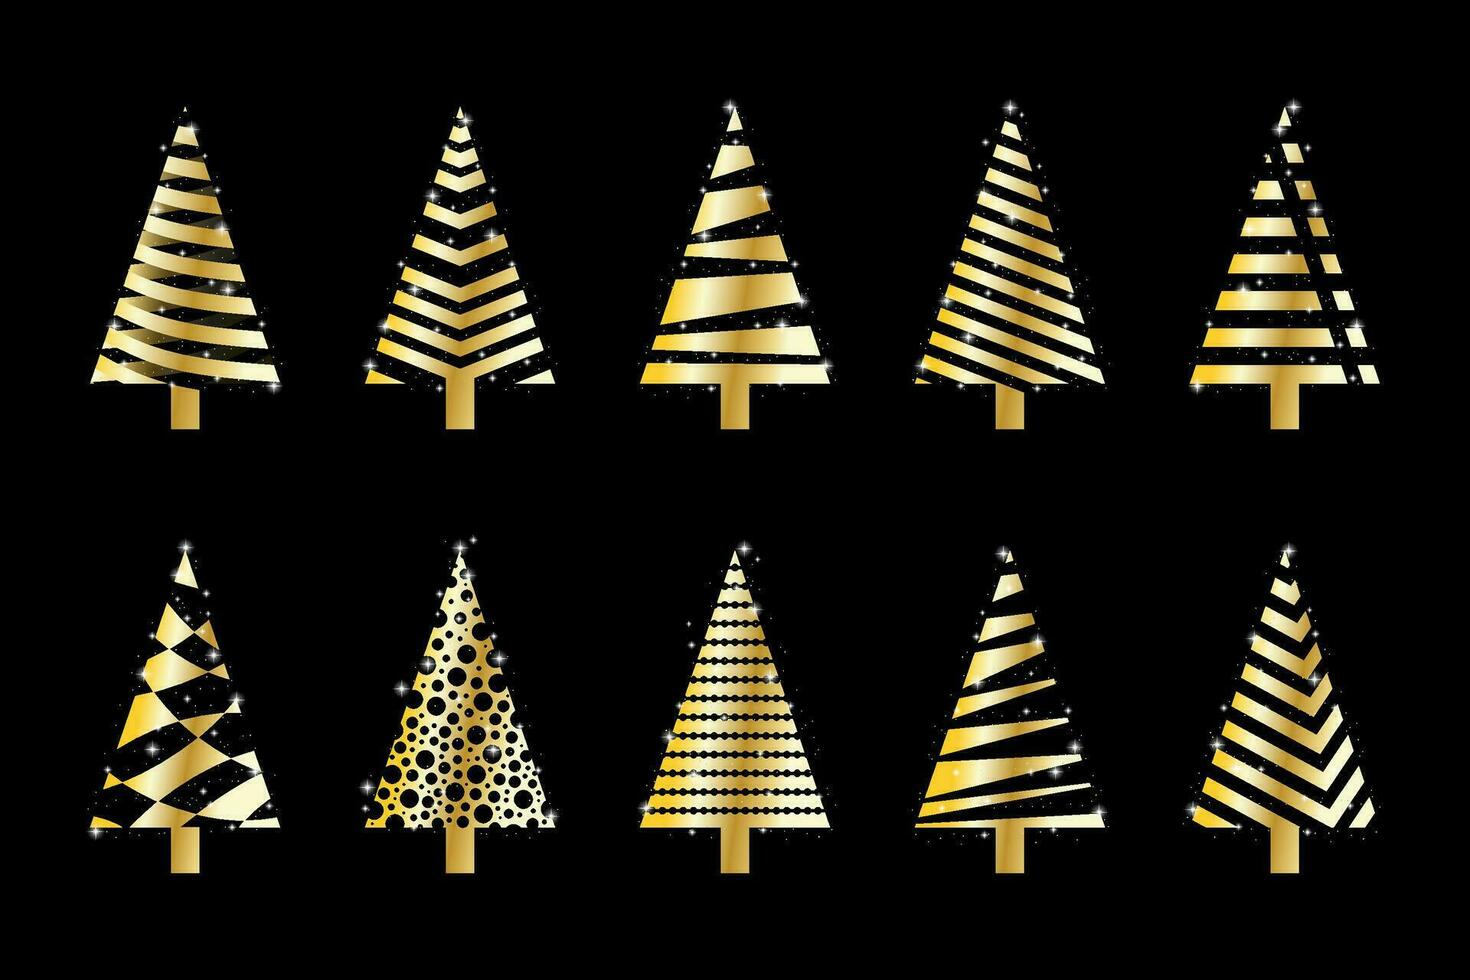 collezione di mano disegnato piatto Natale alberi. vettore illustrazione.